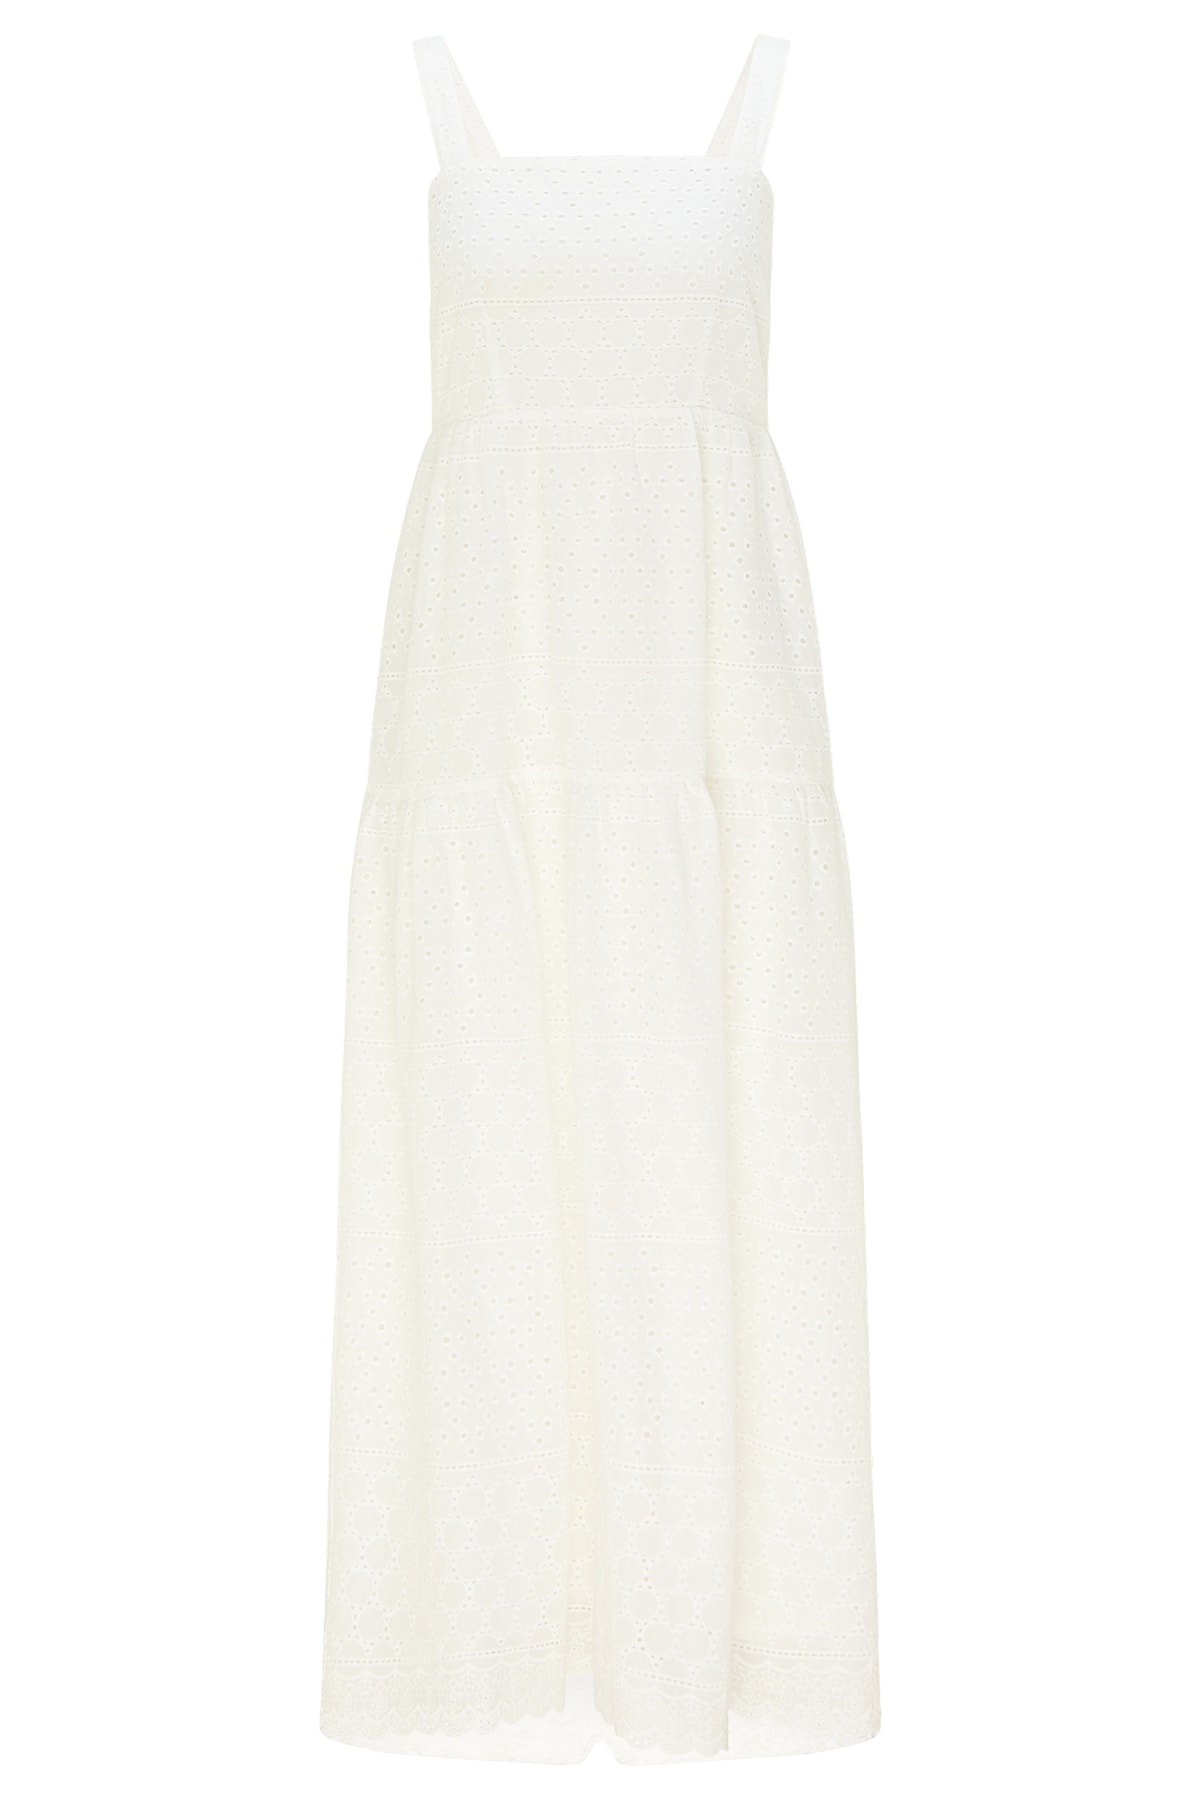 Izia Kleid Weiß Basic